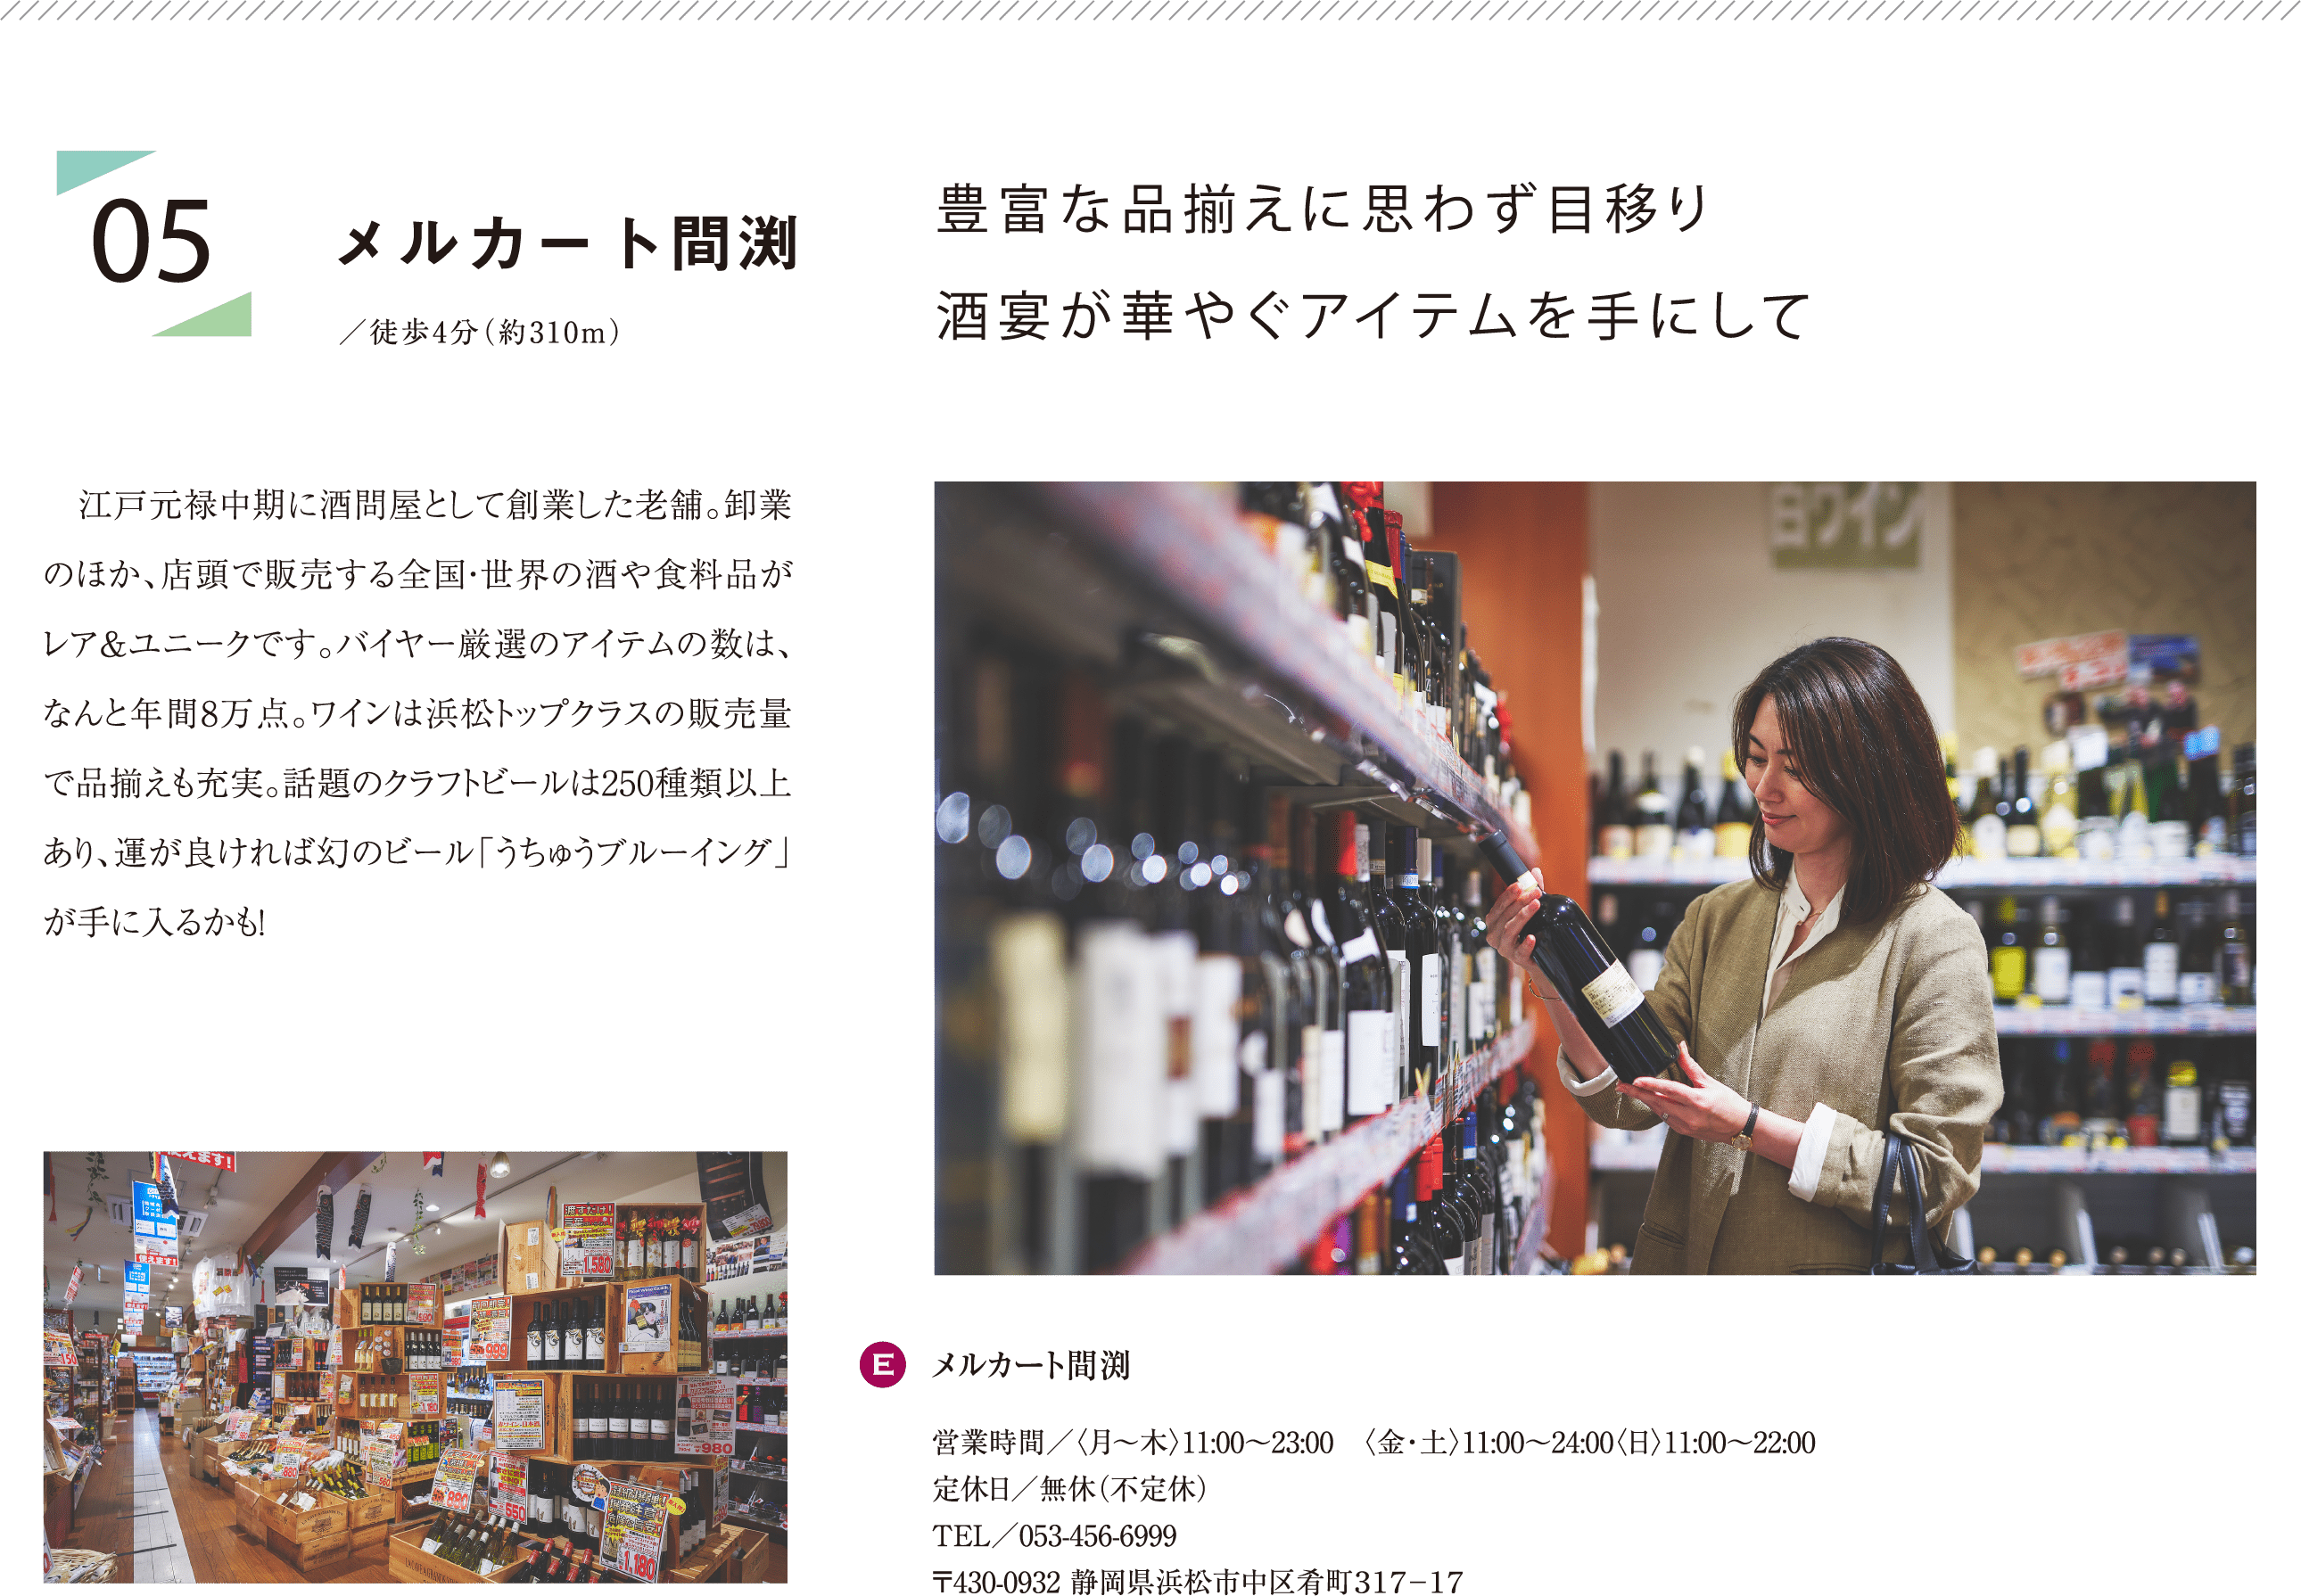 豊富な品揃えに思わず目移り酒宴が華やぐアイテムを手にして 江戸元禄中期に酒問屋として創業した老舗。卸業のほか、店頭で販売する全国・世界の酒や食料品がレア＆ユニークです。バイヤー厳選のアイテムの数は、なんと年間8万点。ワインは浜松トップクラスの販売量で品揃えも充実。話題のクラフトビールは250種類以上あり、運が良ければ幻のビール「うちゅうブルーイング」が手に入るかも！ E:メルカート間渕 営業時間／〈月〜木〉11:00〜23:00 〈金・土〉11:00～24:00〈日〉11:00〜22:00 定休日／無休（不定休） TEL／053-456-6999 〒430-0932 静岡県浜松市中区肴町３１７−１７